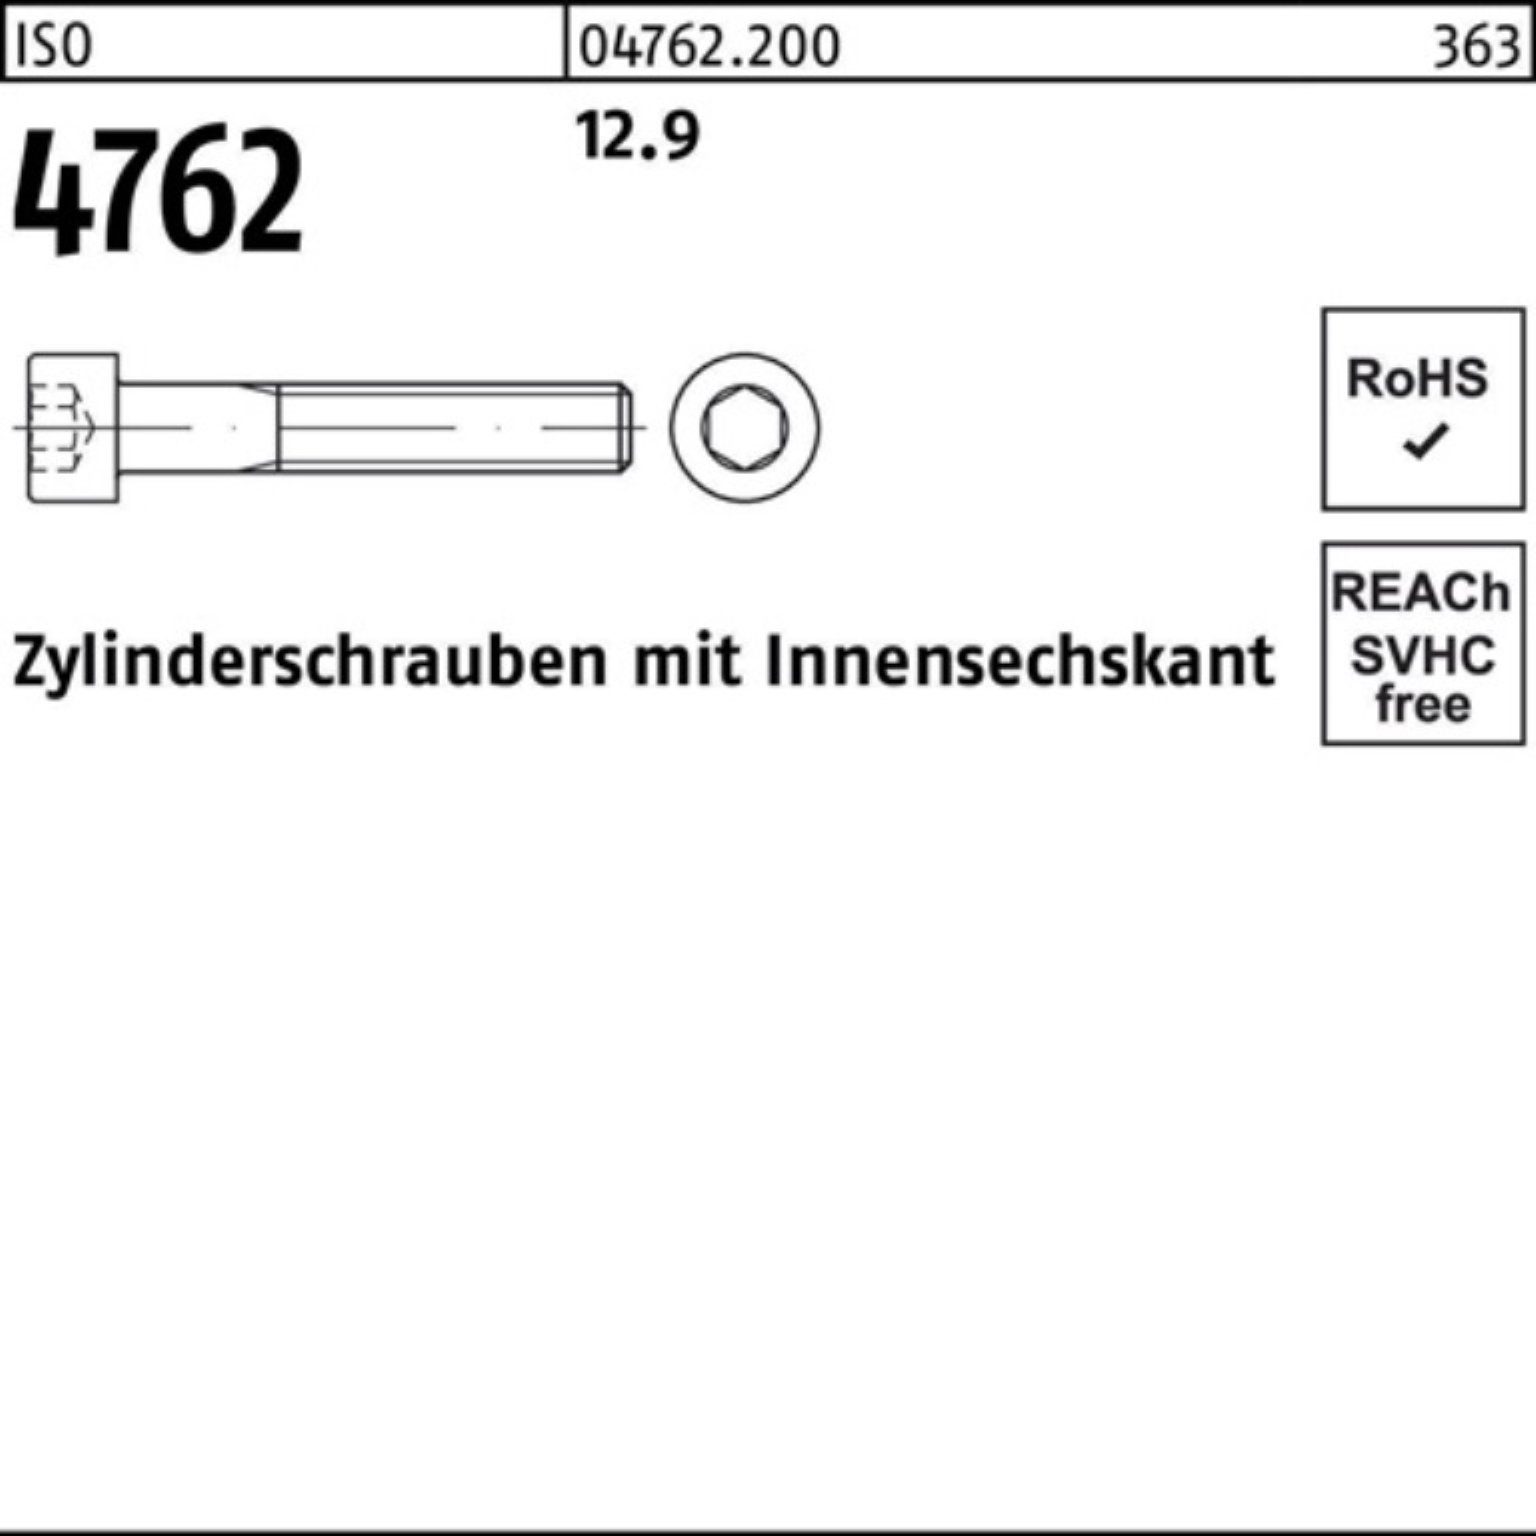 Reyher Zylinderschraube 100er 1 12.9 4762 Innen-6kt 140 Pack ISO Zylinderschraube Stück M39x